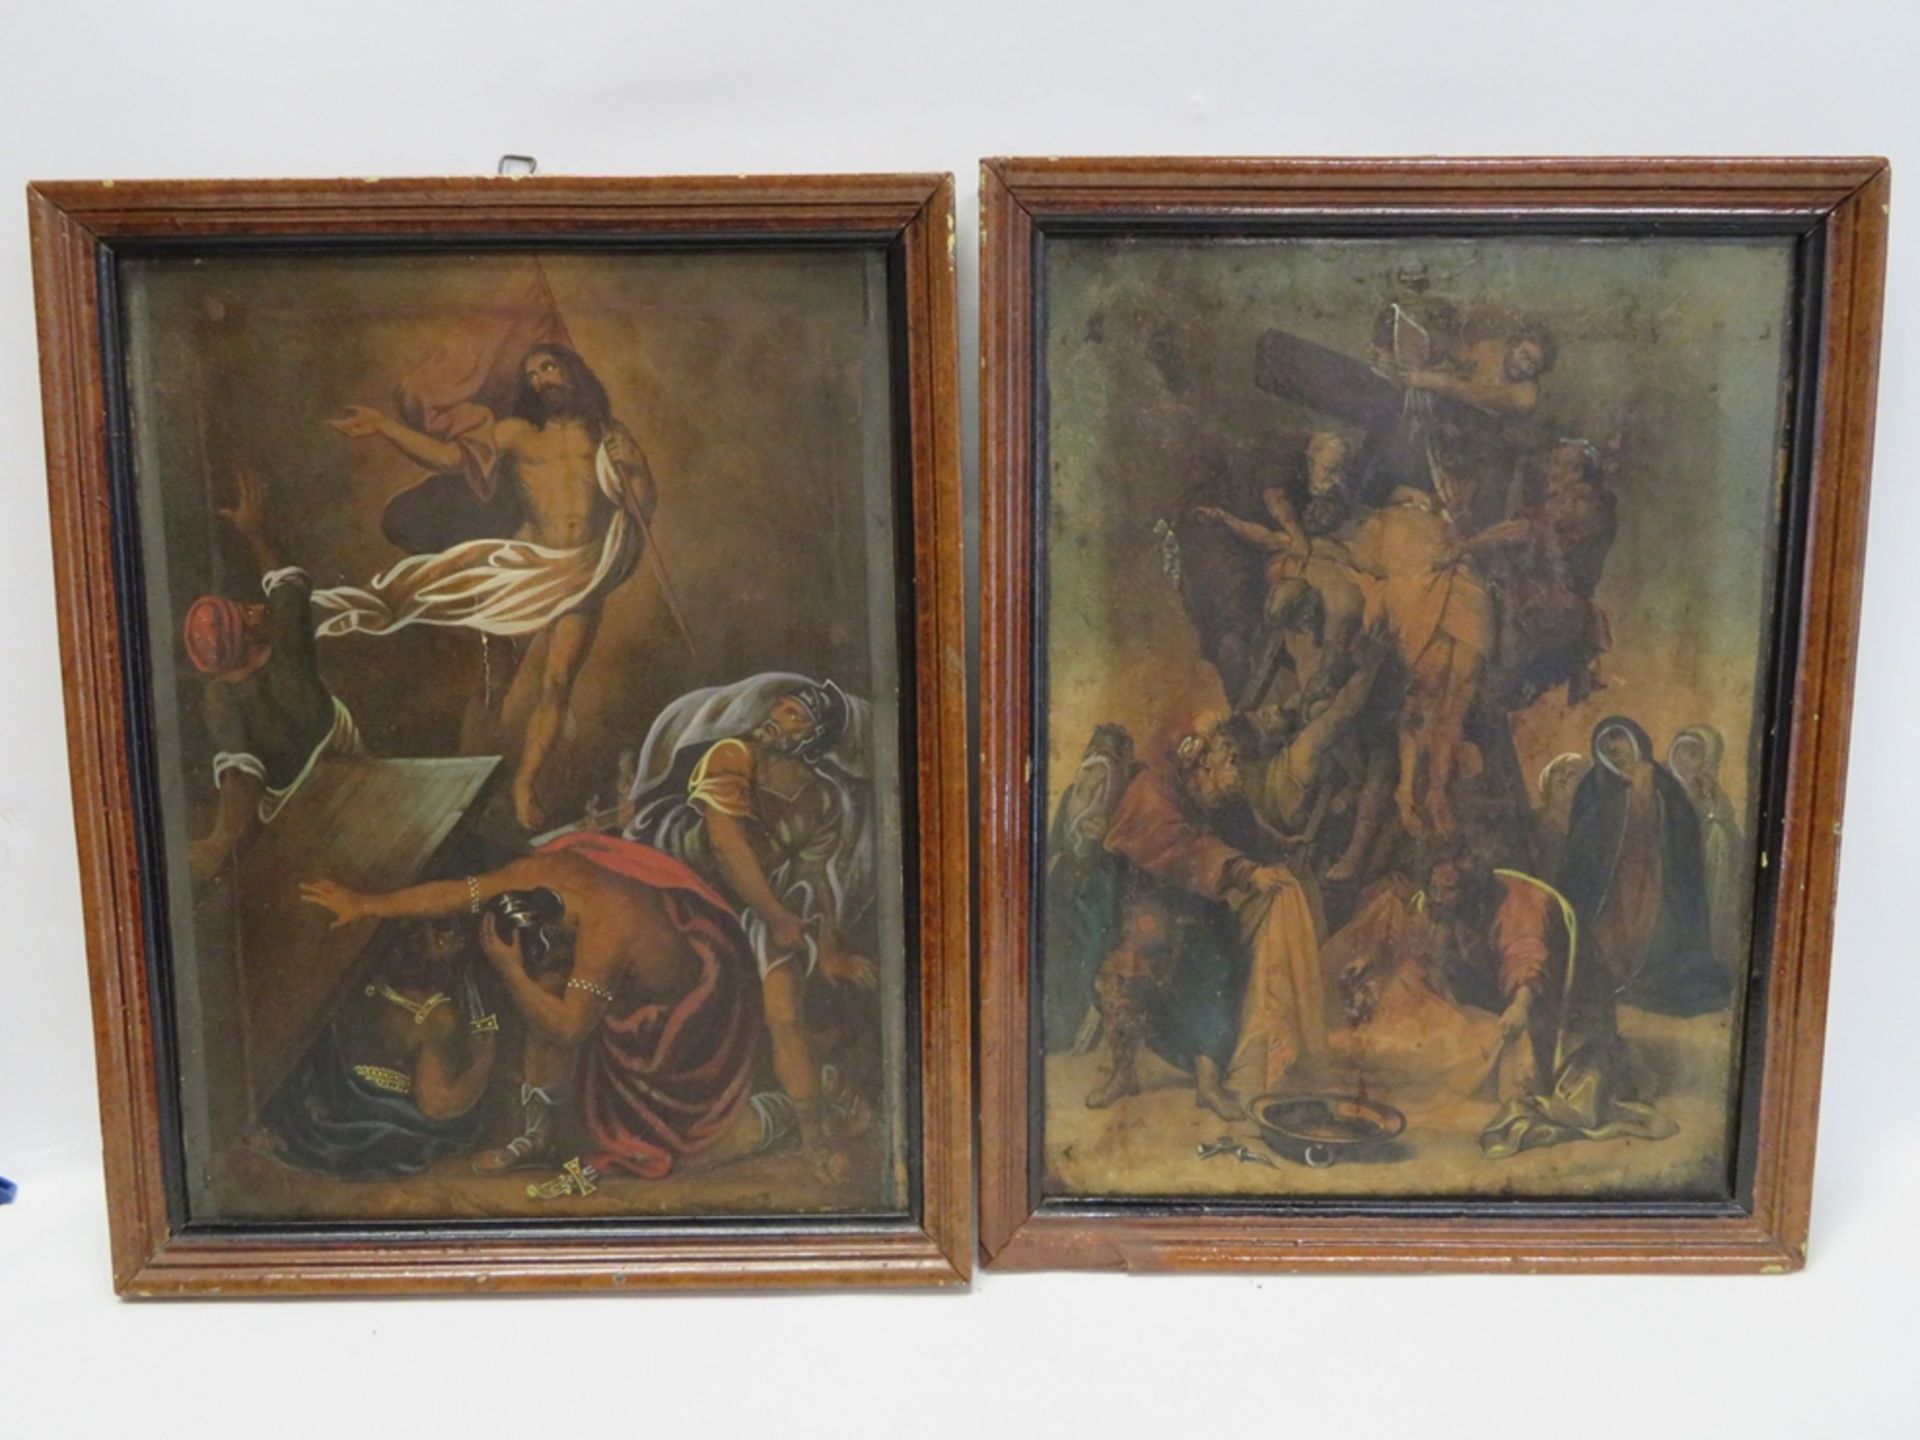 2 religiöse Lithografien, um 1900, coloriert, 32,5 x 25 cm, R.